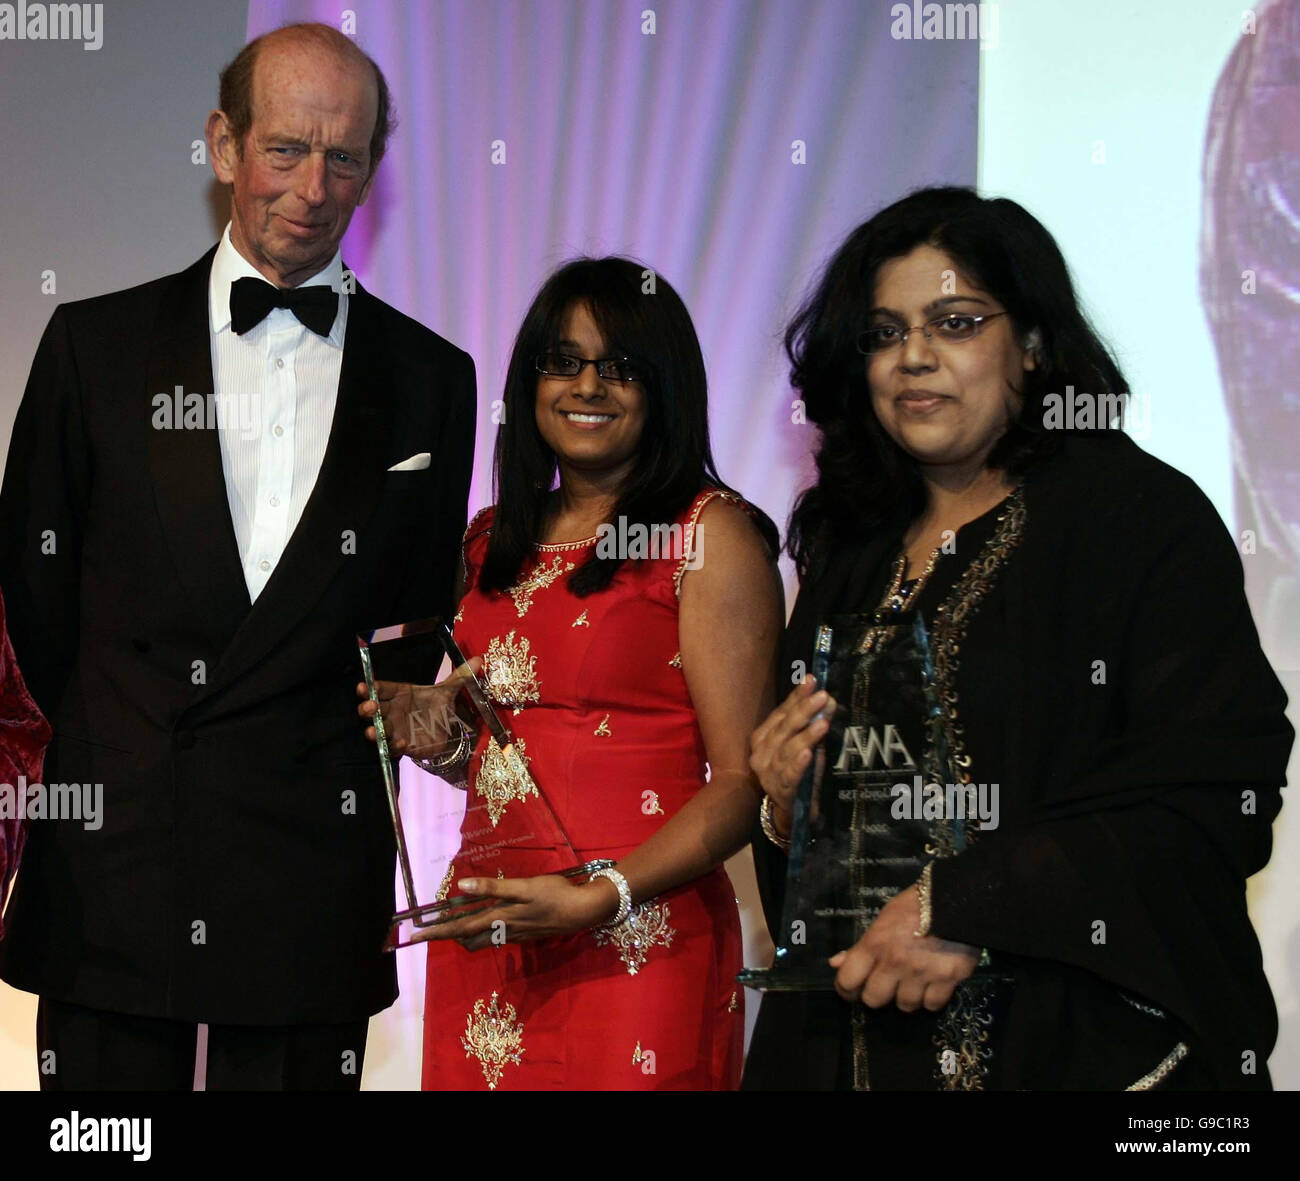 S.H. The Duke of Kent überreicht Sumerah Ahmad, 32, (Mitte) und Humerah Khan, 34, Mitbegründer und Direktoren des Clubs Asia Radio, Essex, den Entrepreneur of the Year Award bei den Asian Women of Achievement Awards in London. Stockfoto